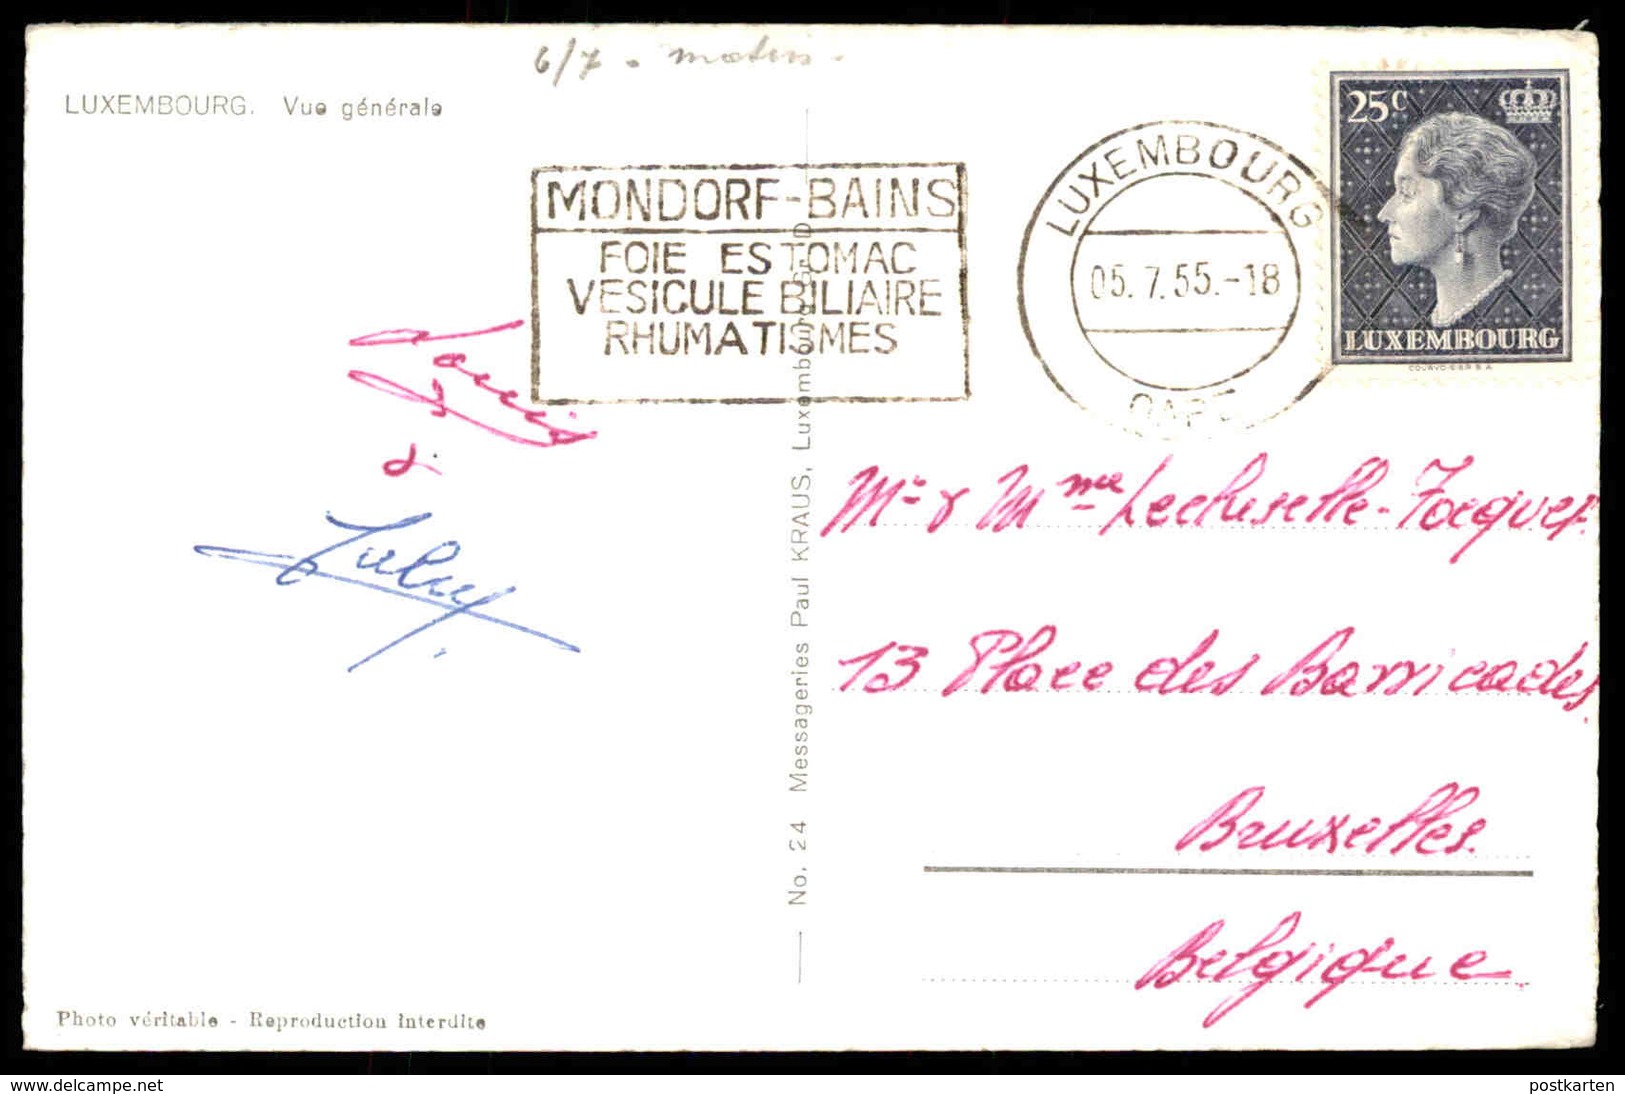 ÄLTERE POSTKARTE LUXEMBOURG VUE GÉNÉRALE 1955 ROSA KIRSCHBLÜTE GRUND LUXEMBURG Cpa Postcard Ansichtskarte AK - Luxemburg - Stadt